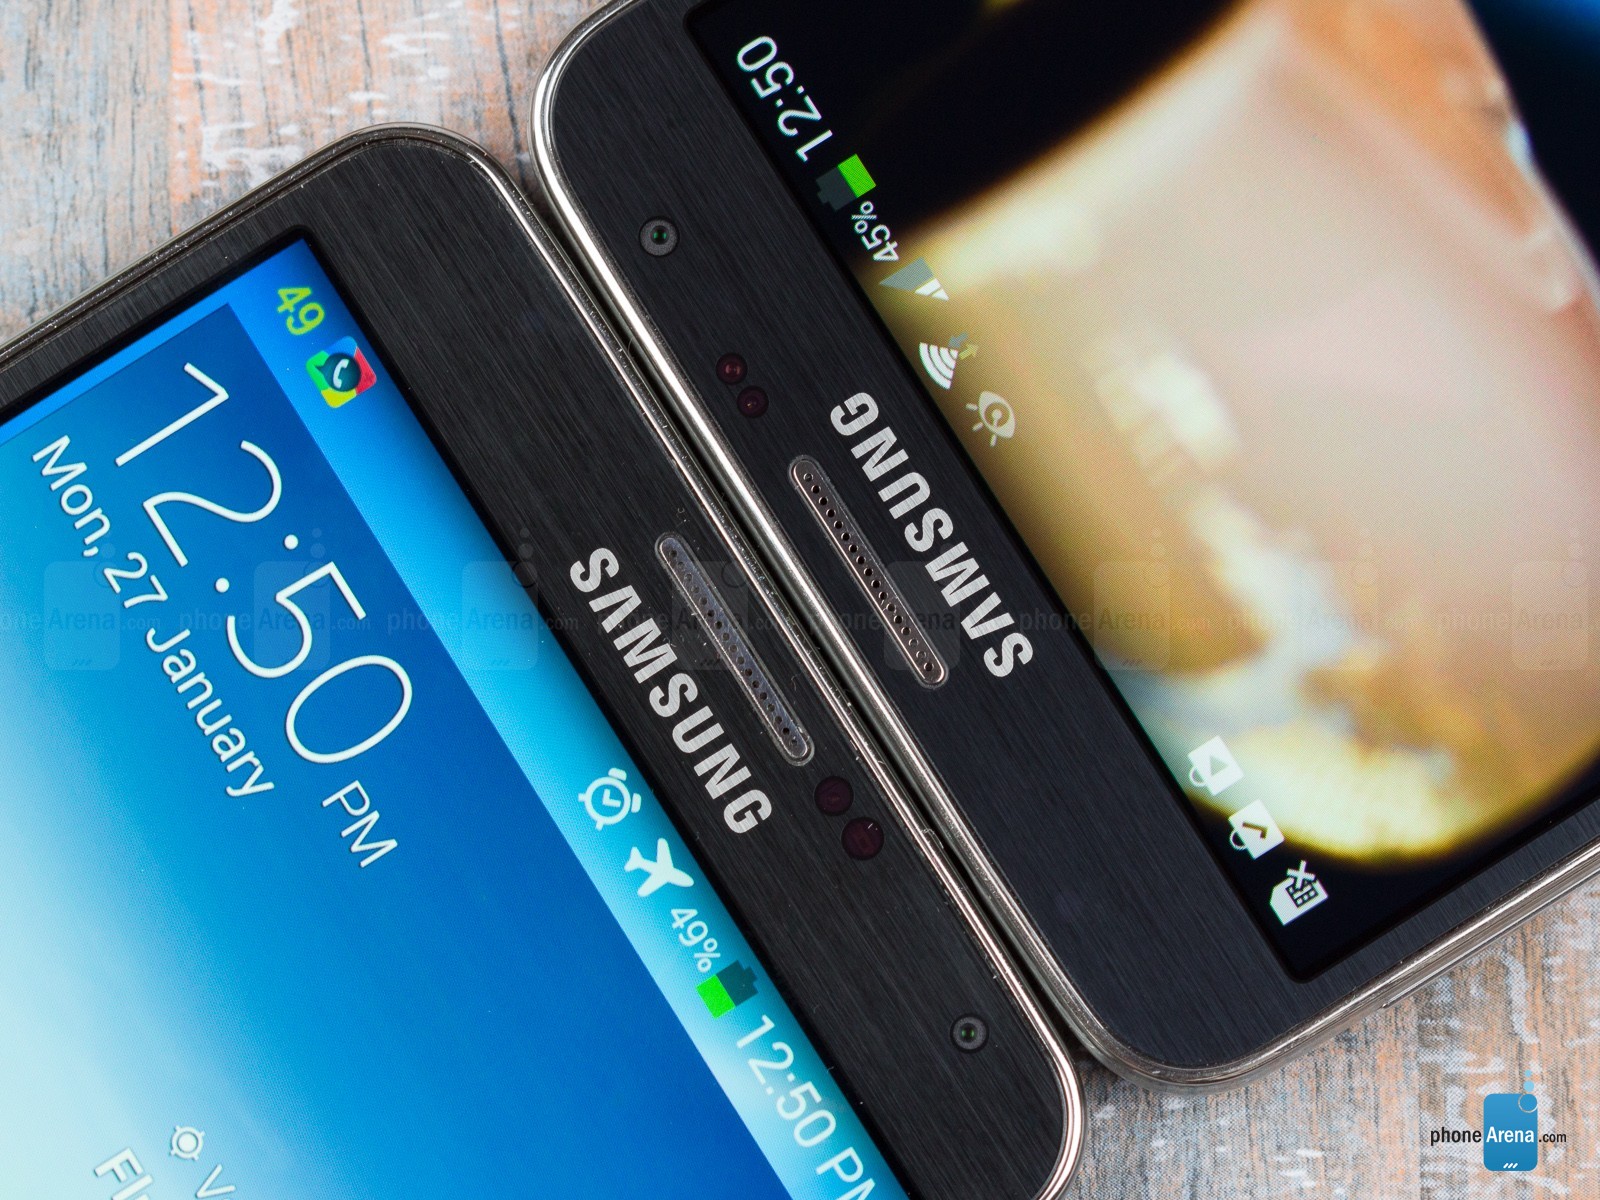 Vì hướng tới phân khúc giá rẻ hơn nên Galaxy Note 3 Neo chỉ được tích hợp màn hình 5,5 inch độ phân giải HD trong khi Galaxy Note 3 lại tự hào đem đến chất lượng hình ảnh mịn màng, sắc nét nhờ màn hình Full HD.